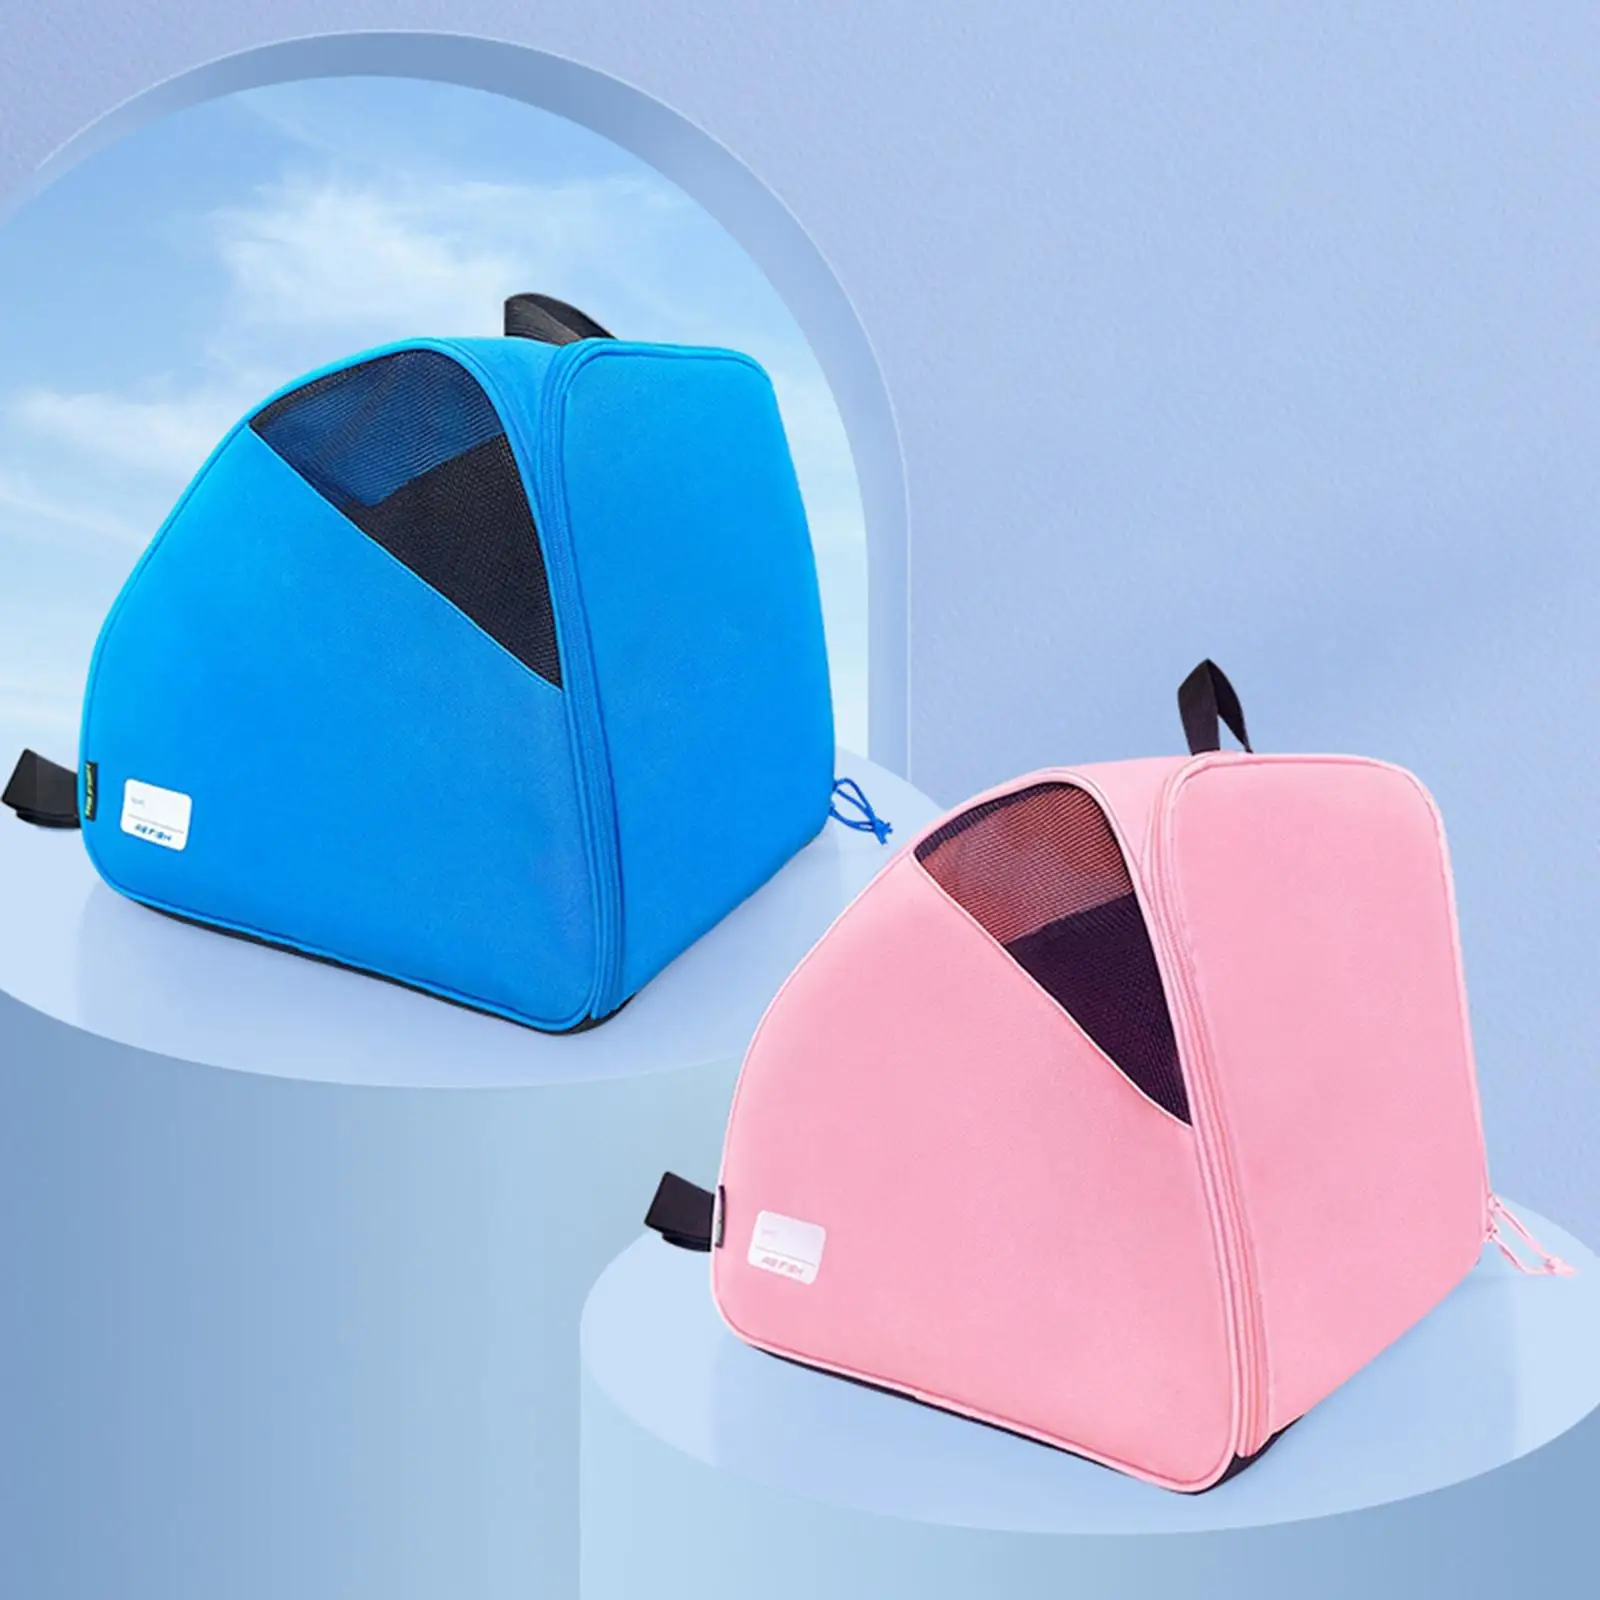 Roller Skate Bag with Carry Handle and Adjustable Shoulder Strap Skating Bag